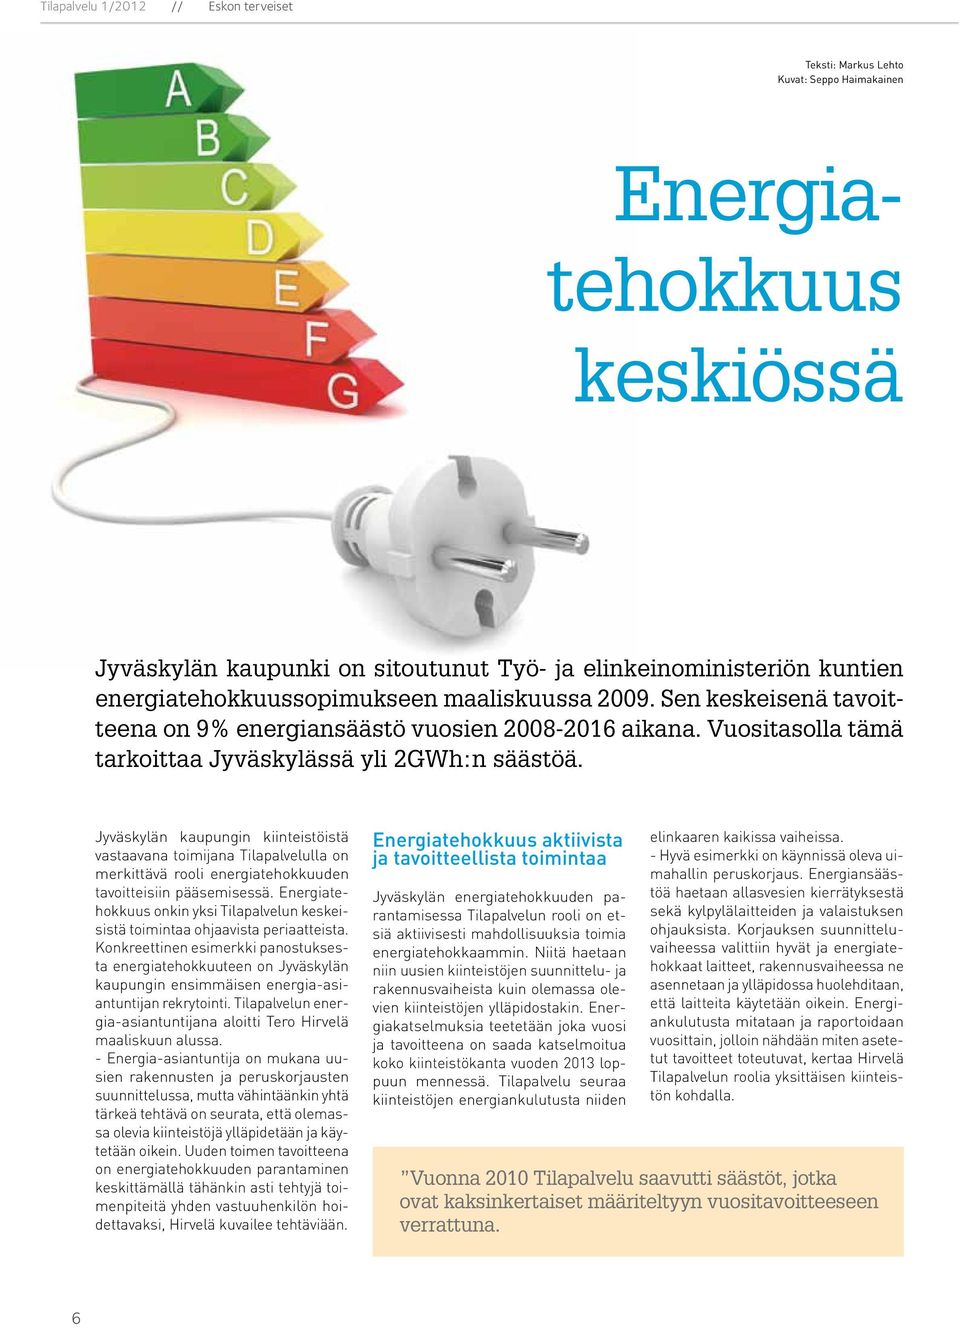 Jyväskylän kaupungin kiinteistöistä vastaavana toimijana Tilapalvelulla on merkittävä rooli energiatehokkuuden tavoitteisiin pääsemisessä.